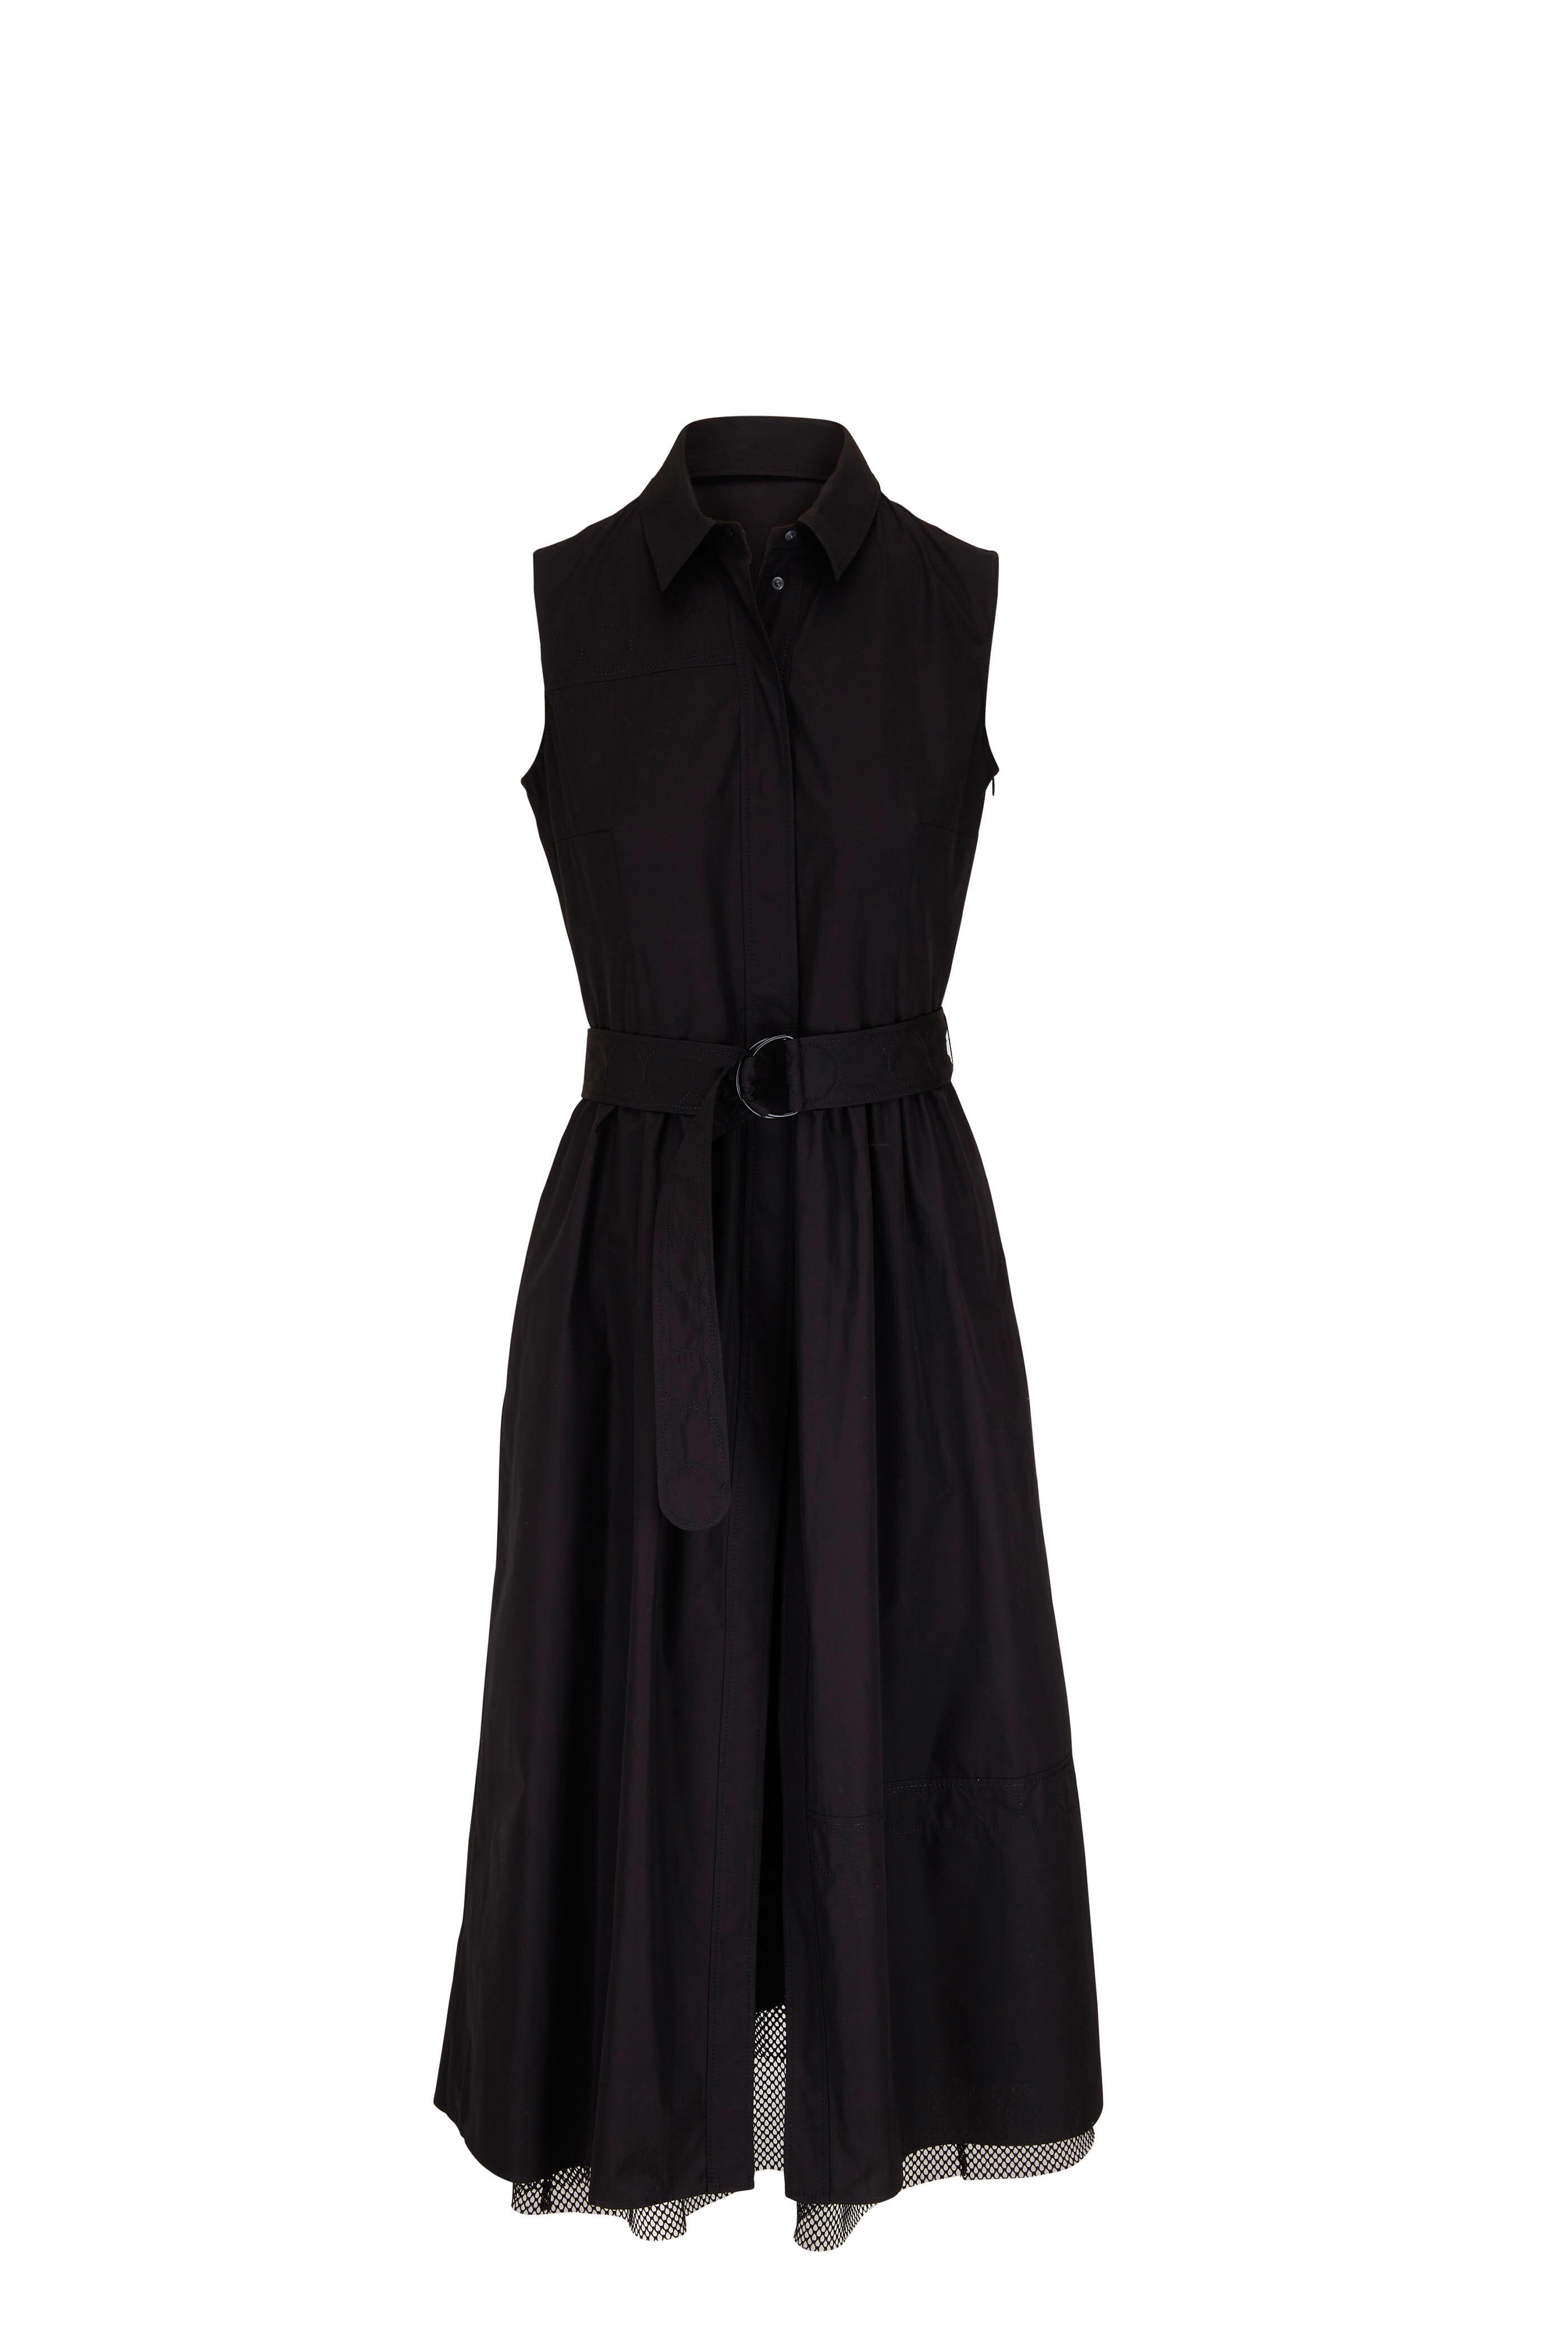 AKRIS Punto Black Mock Neck Embellished Sleeveless Knee-Length Neoprene  Dress 6